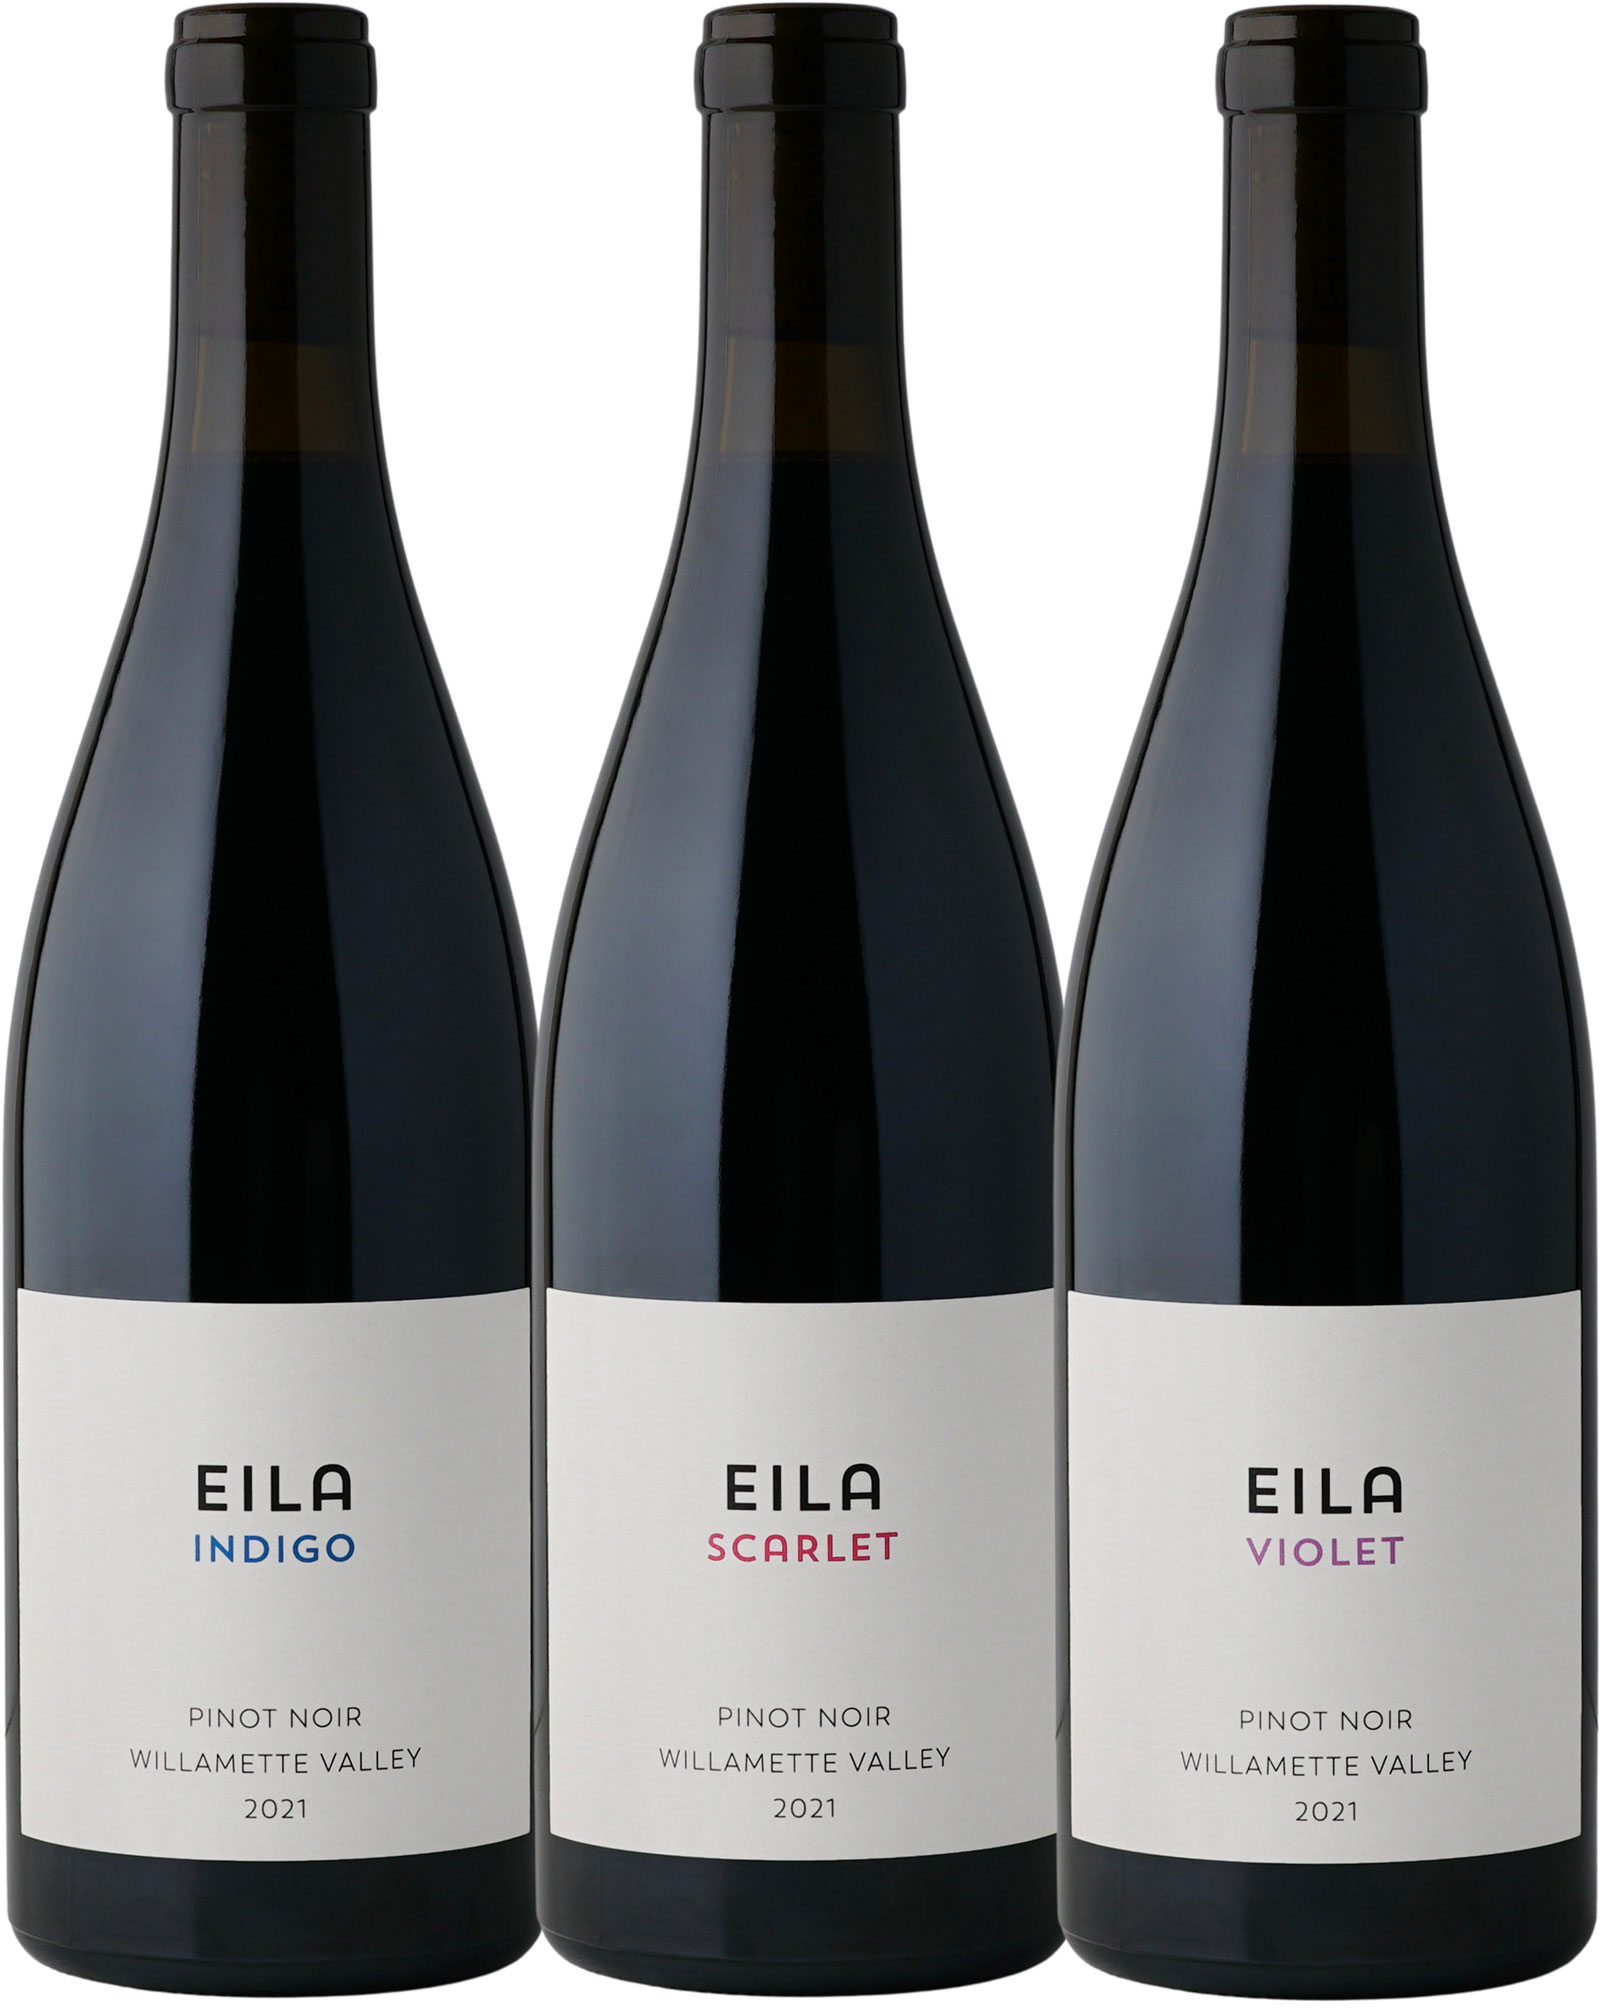 Three bottles of Eila Wines Pinot Noir - Indigo, Scarlet and Violet varieties